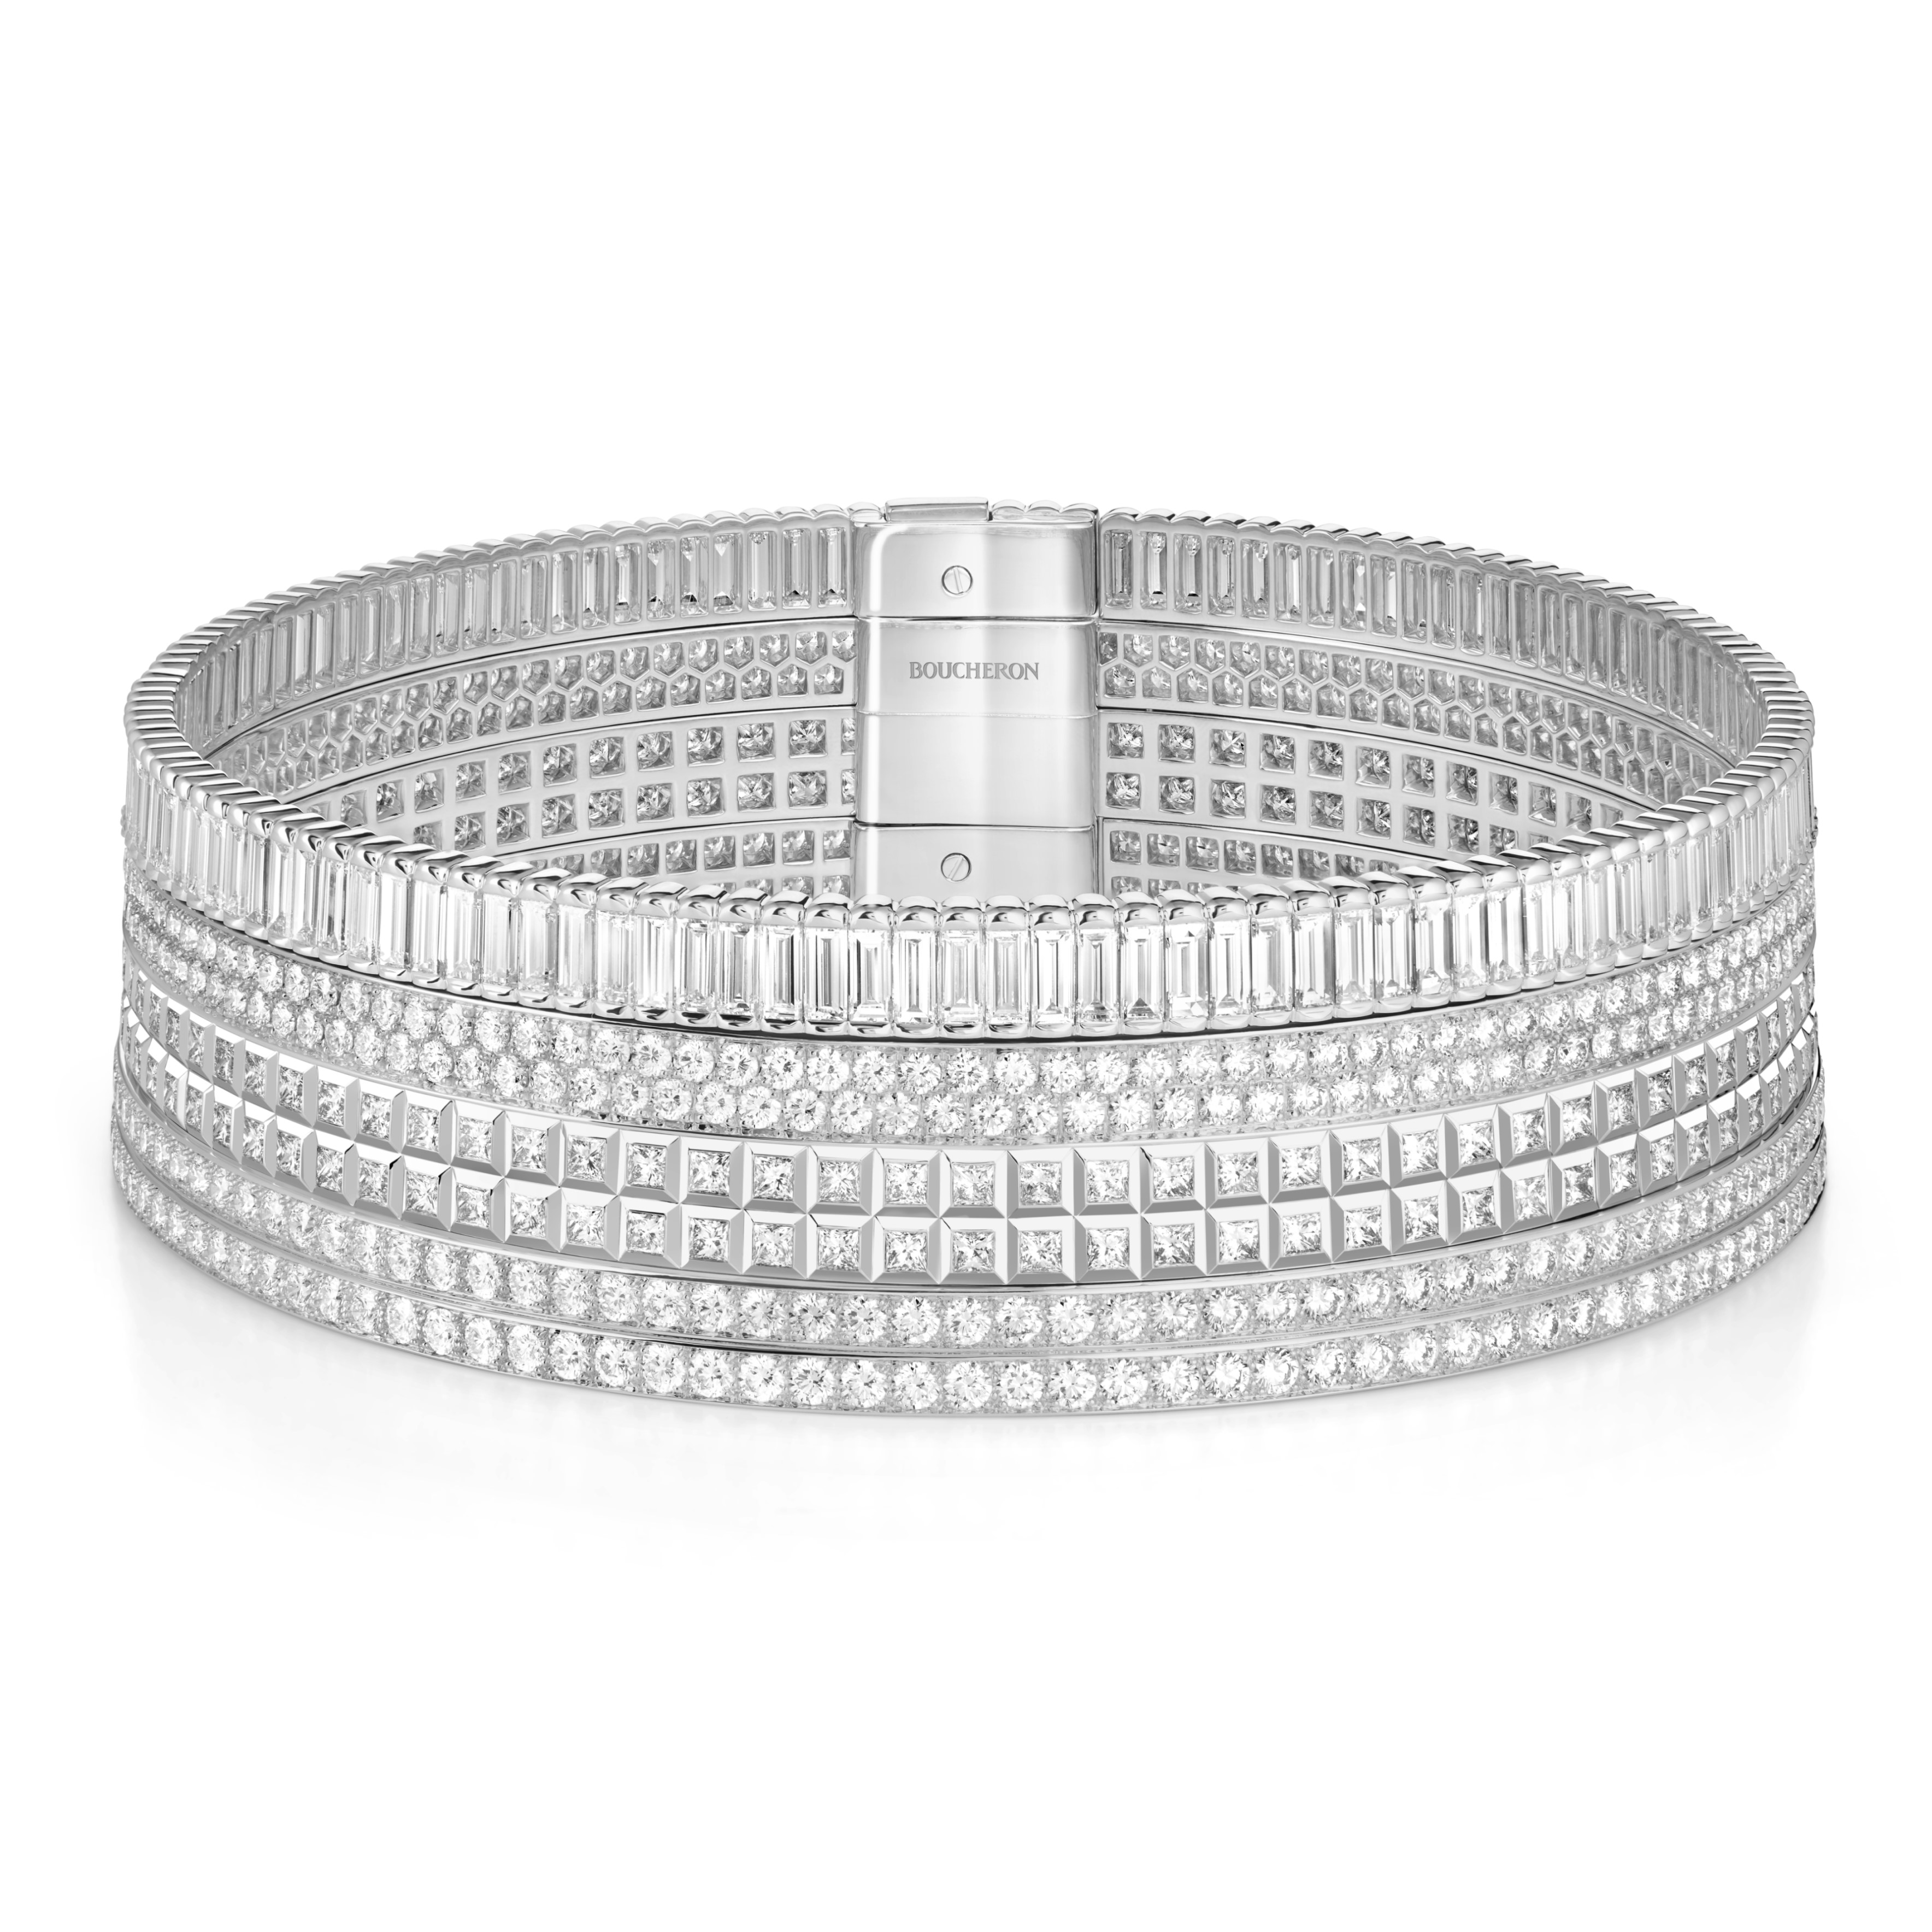 宝诗龙（Boucheron）高级珠宝系列Quatre Radiant颈链，白金、镶嵌钻石，3,235万元，图／Boucheron提供